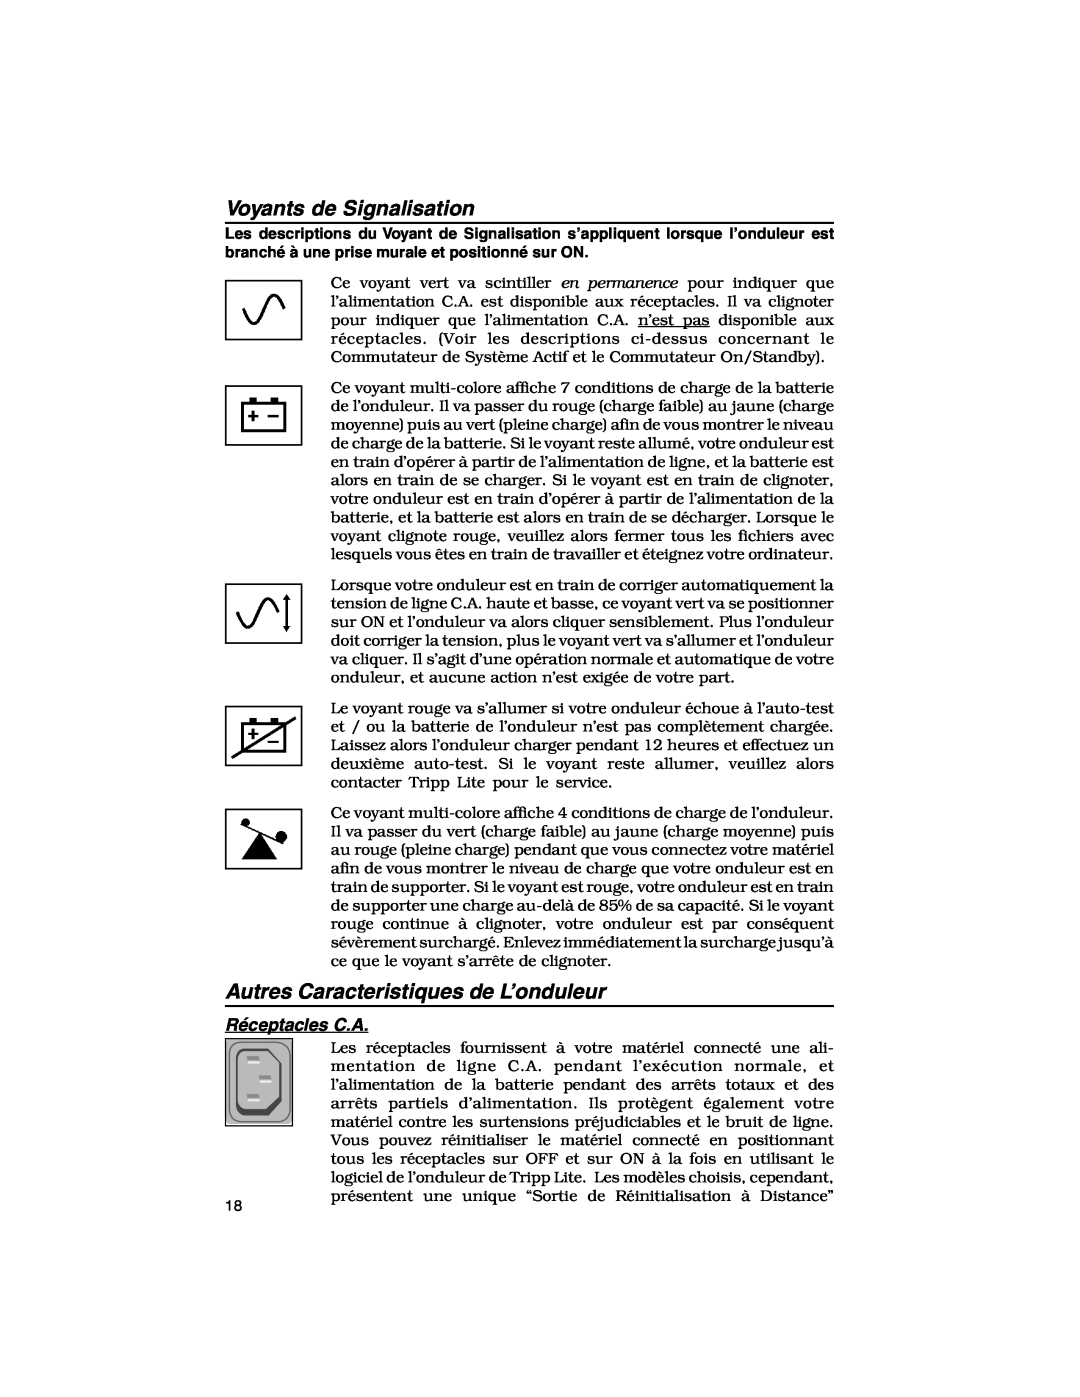 Tripp Lite 450-1400VA specifications Voyants de Signalisation, Autres Caracteristiques de L’onduleur, Réceptacles C.A 